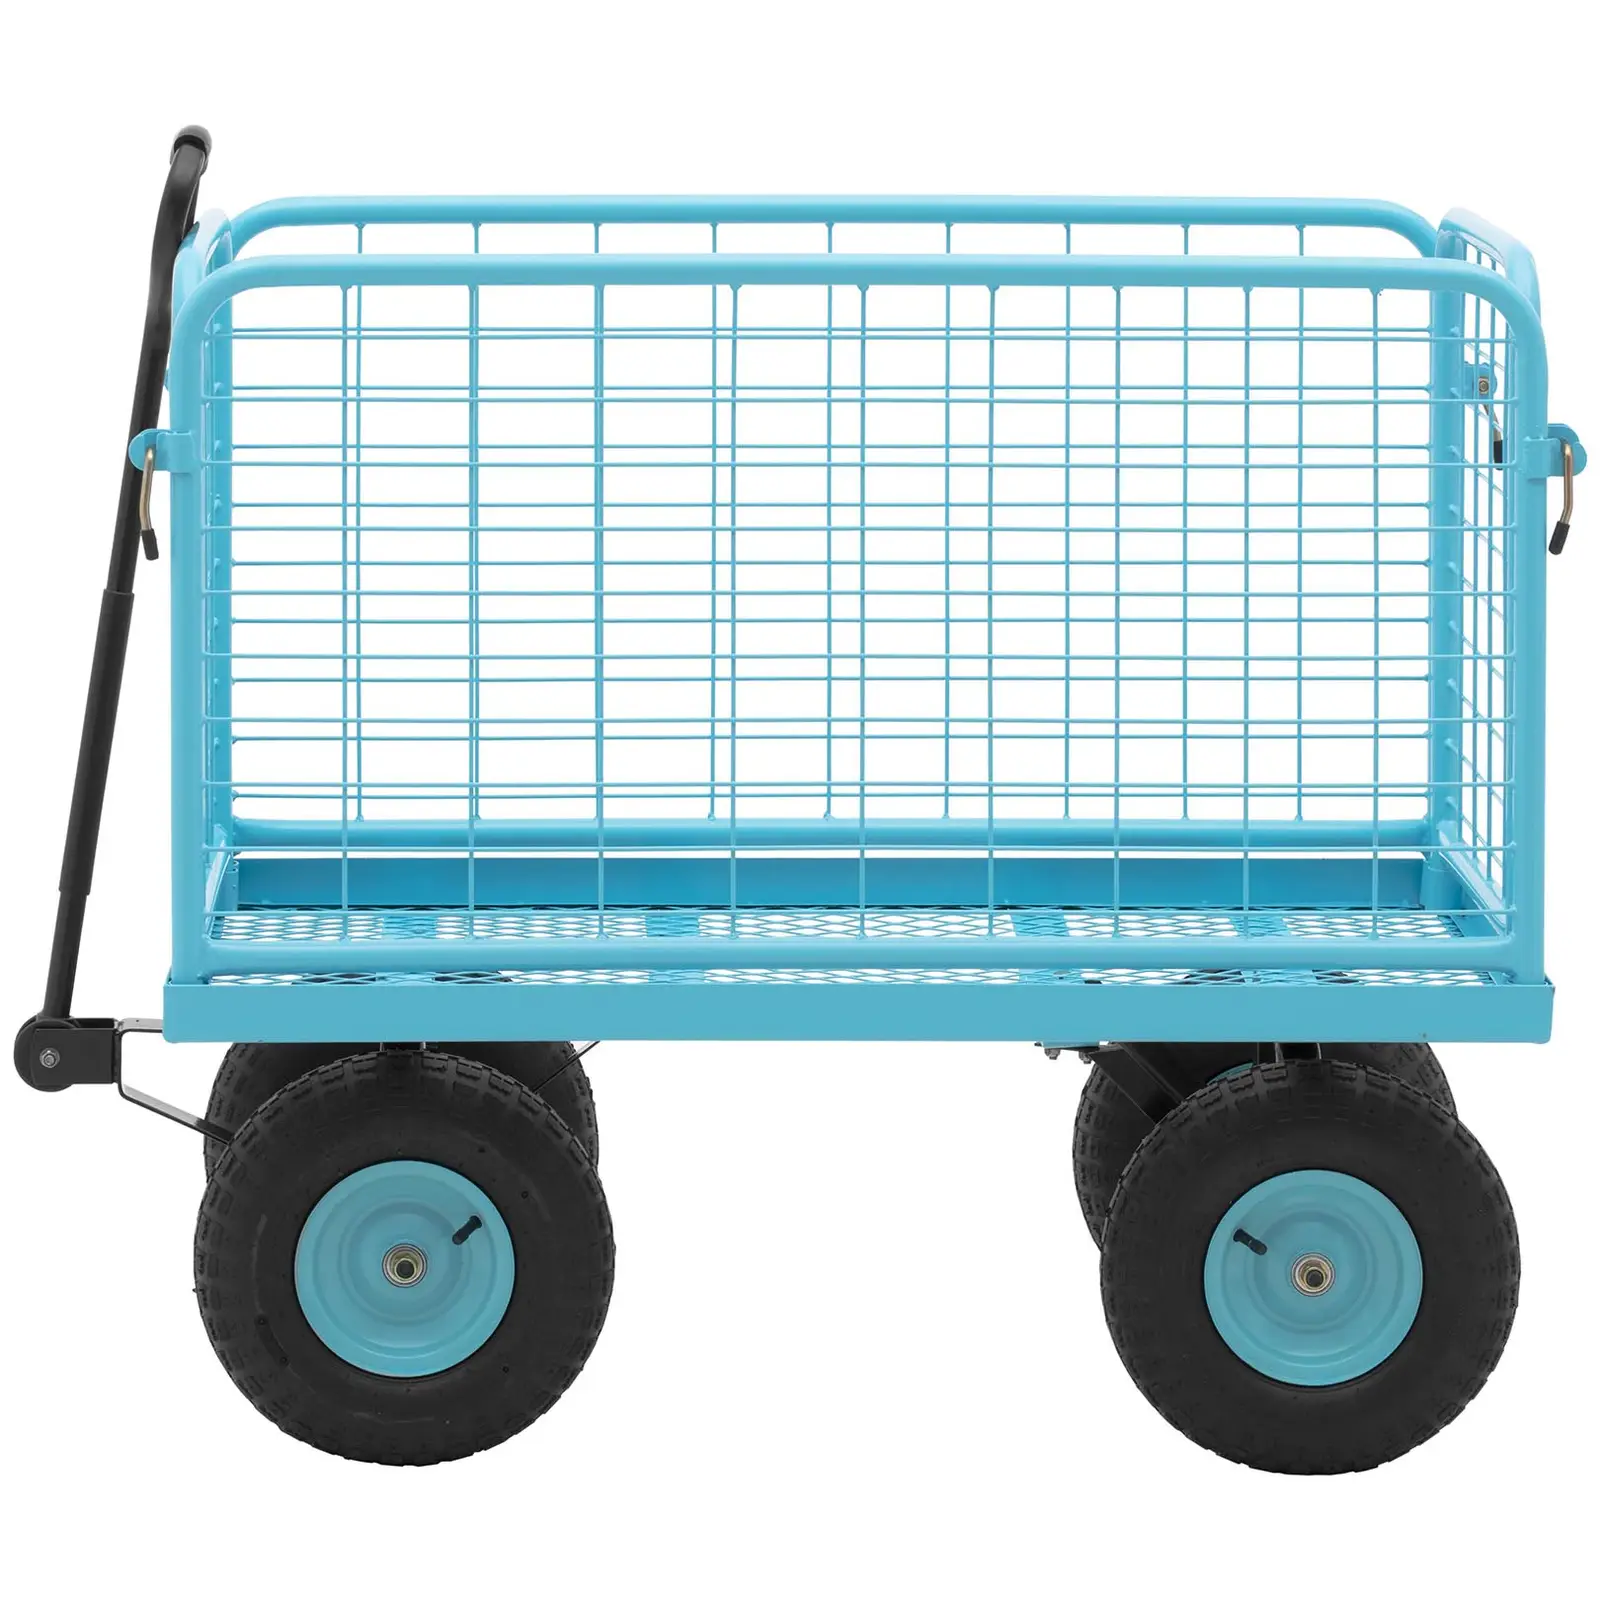 Chariot de jardin - 400 kg - barrières latérales amovibles